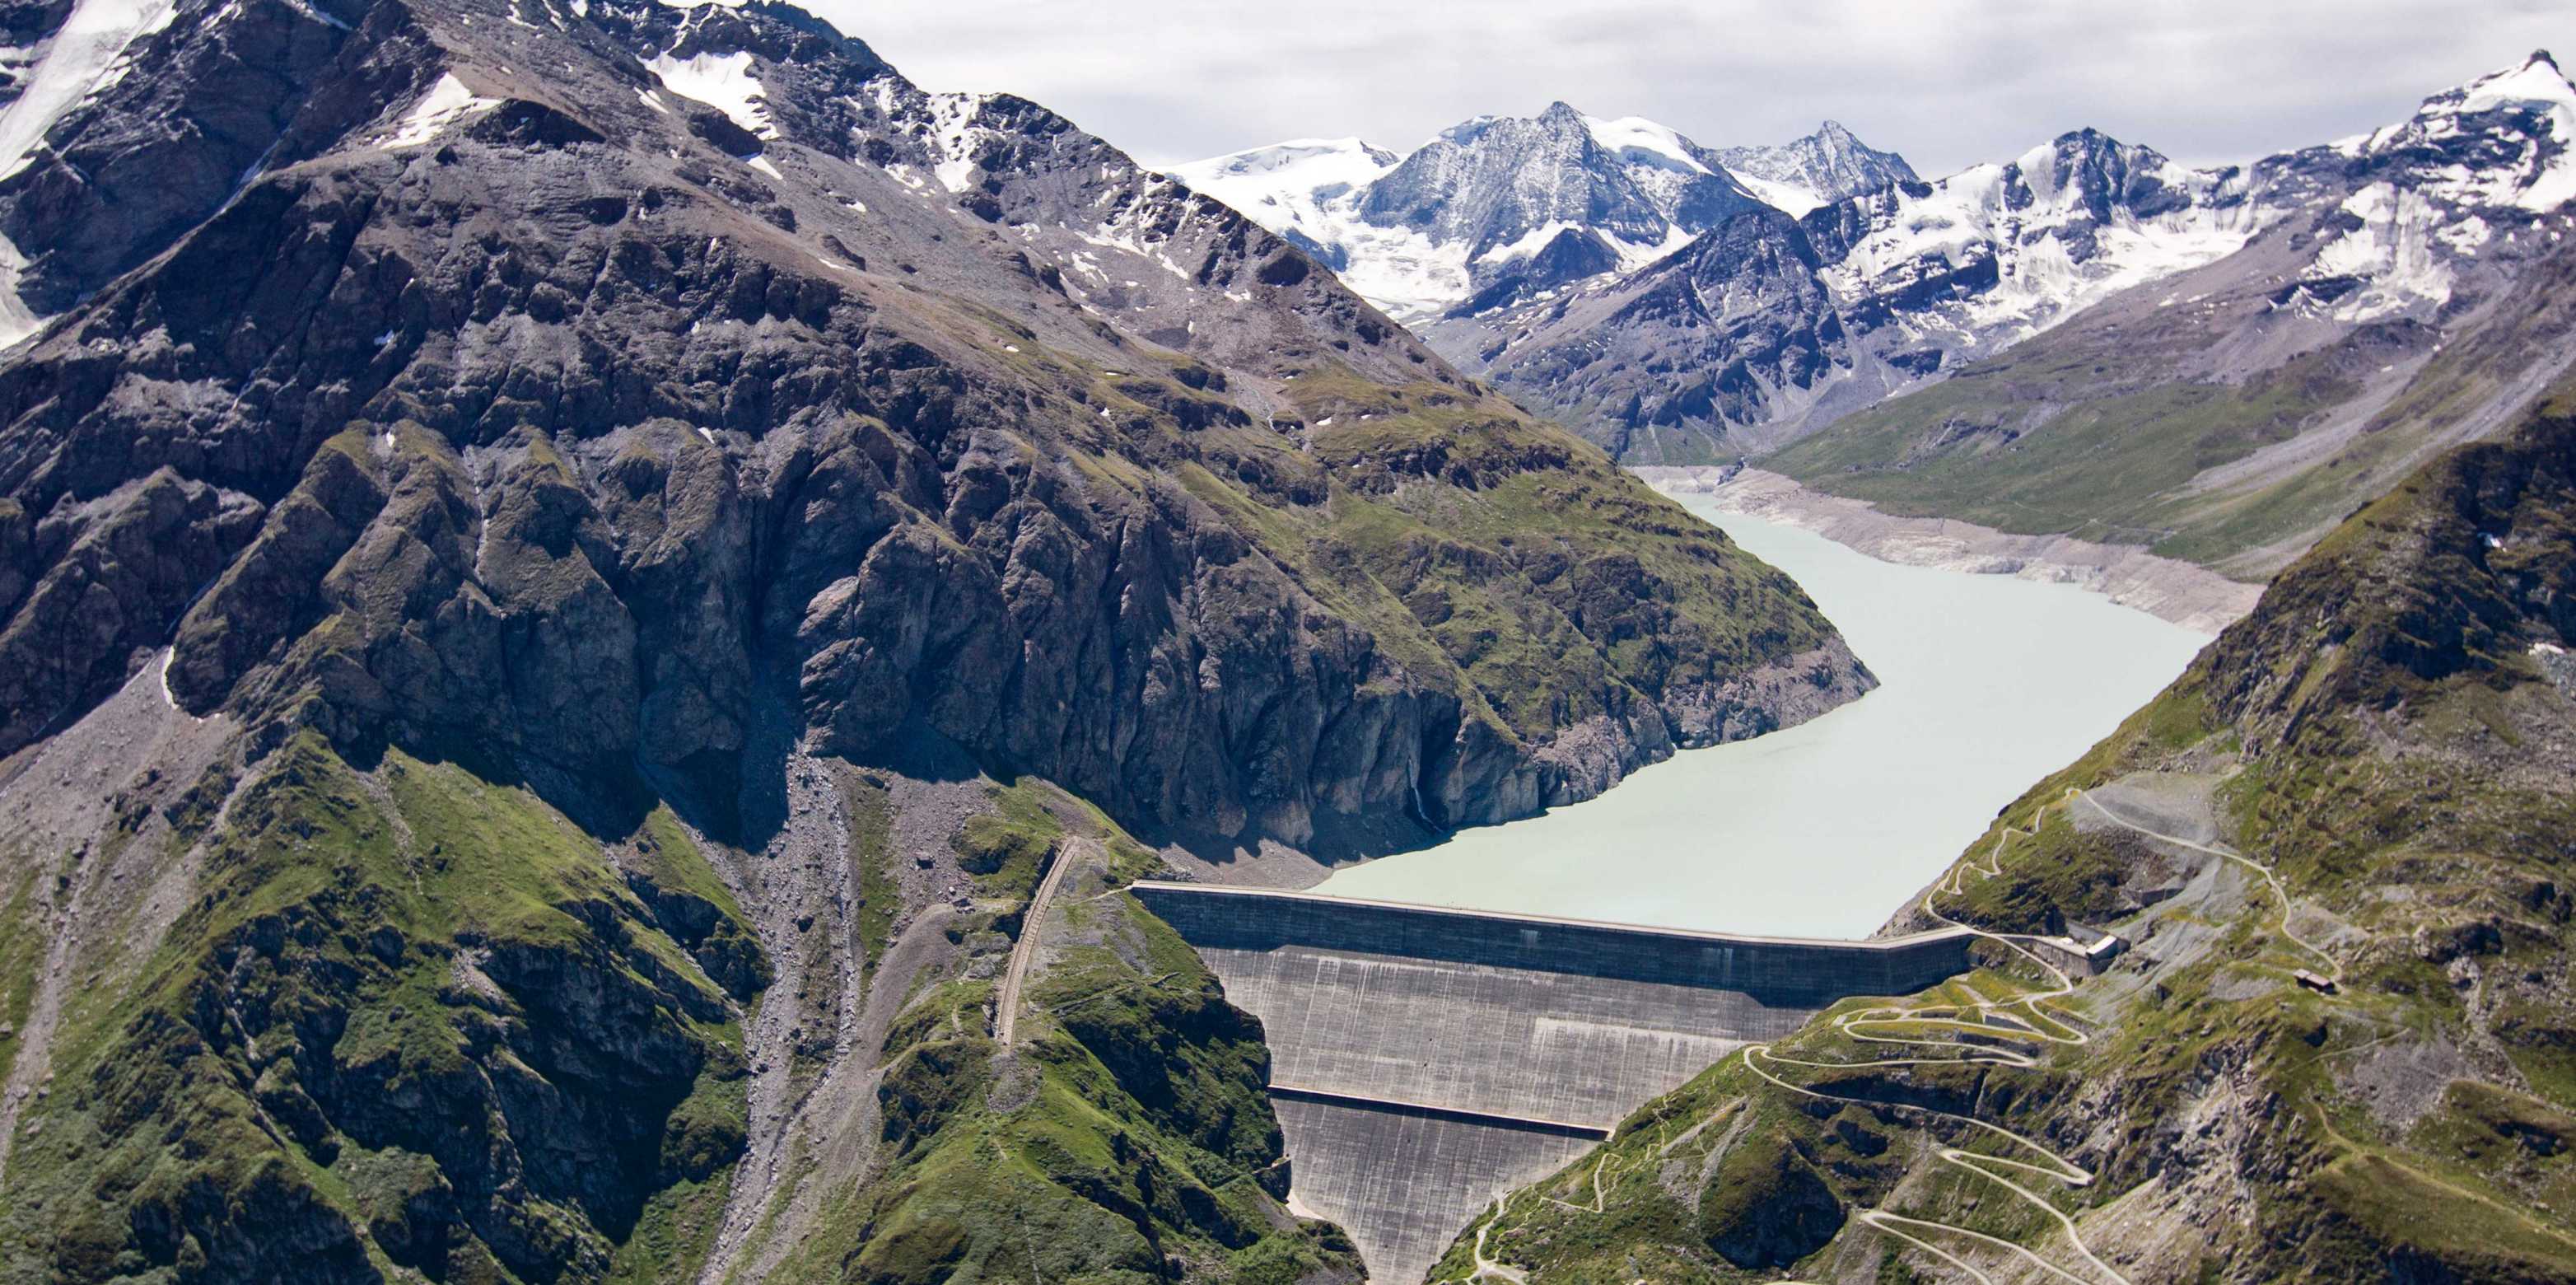 Der Staudamm Lac des Dix mit dem Panorama im Hintergrund